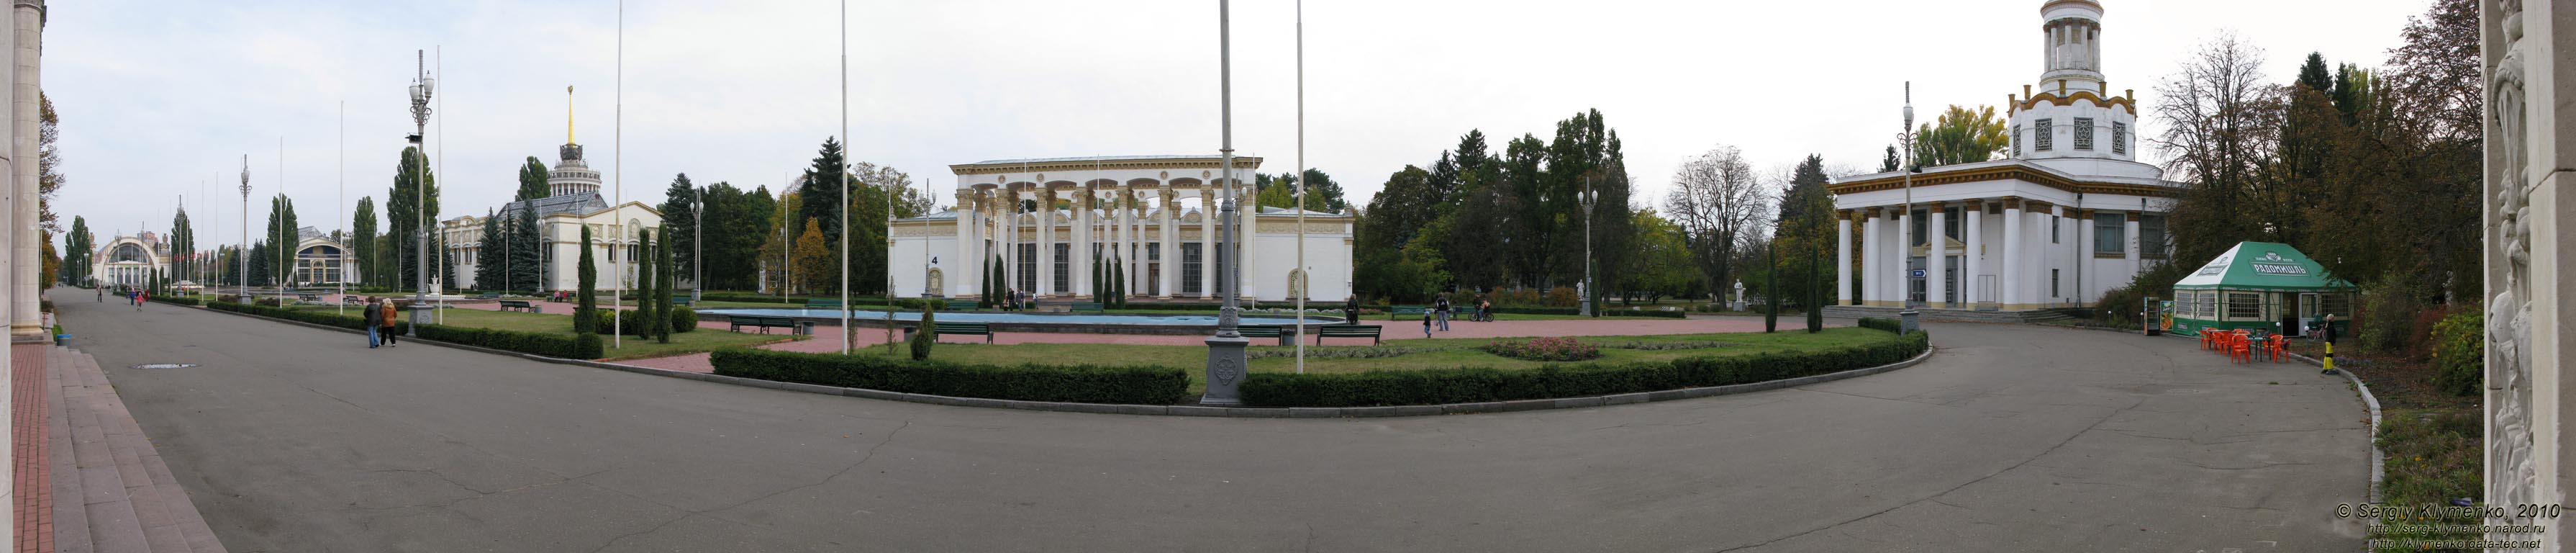 Фото Киева. Национальный комплекс «Экспоцентр Украины». Главная площадь (панорама ~180°).